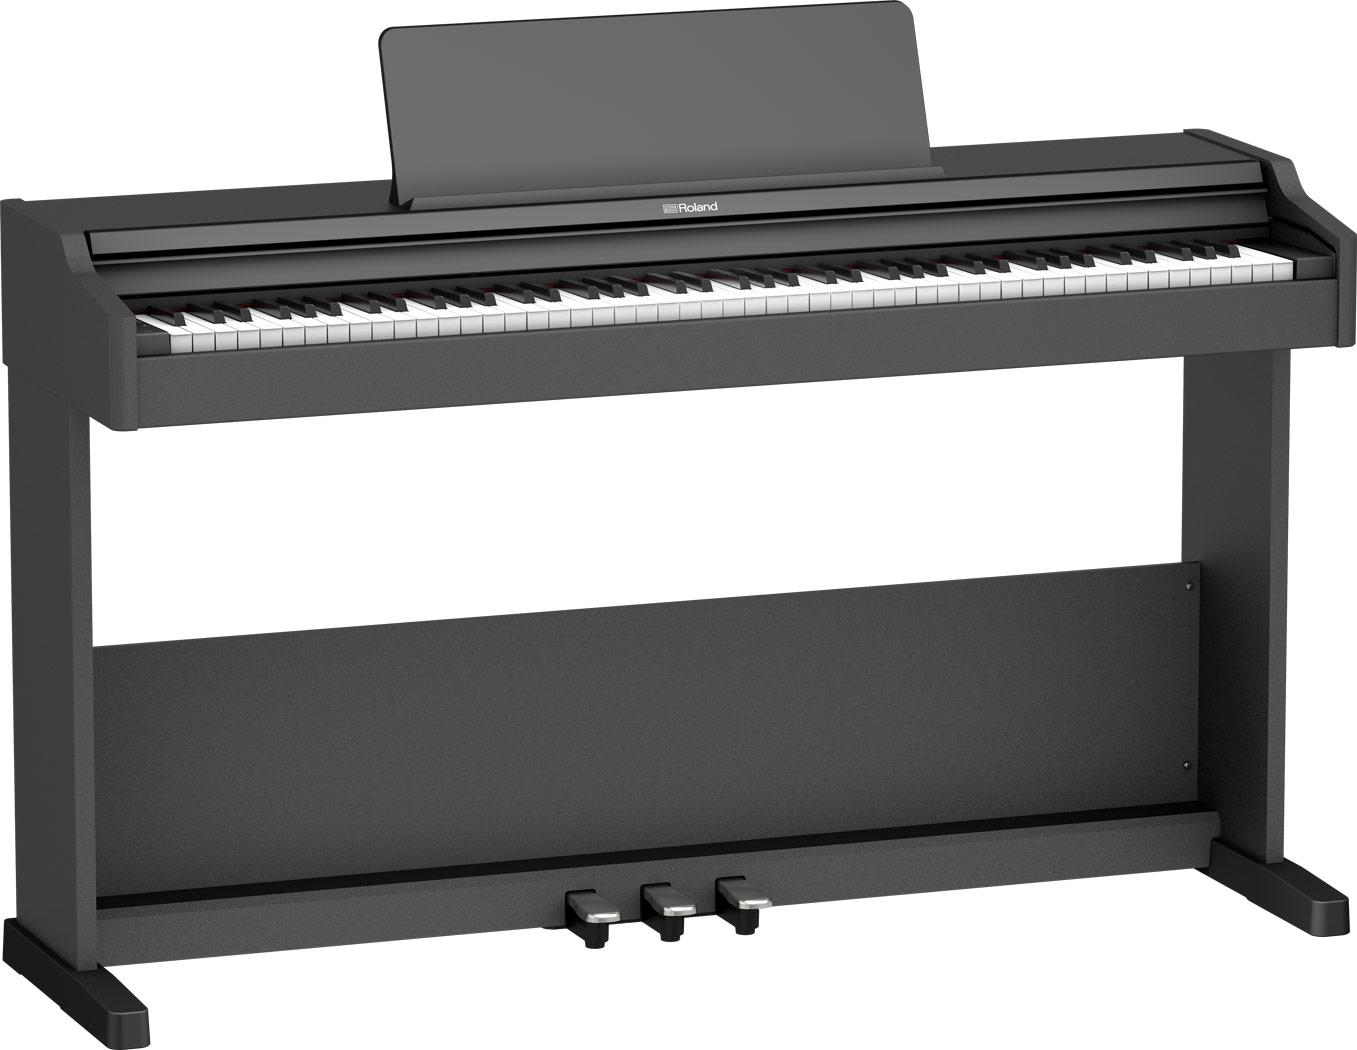 送料込み Roland 電子ピアノ HPi-7F-RW  2011年製 超美品 鍵盤楽器 楽器/器材 おもちゃ・ホビー・グッズ 一番人気物